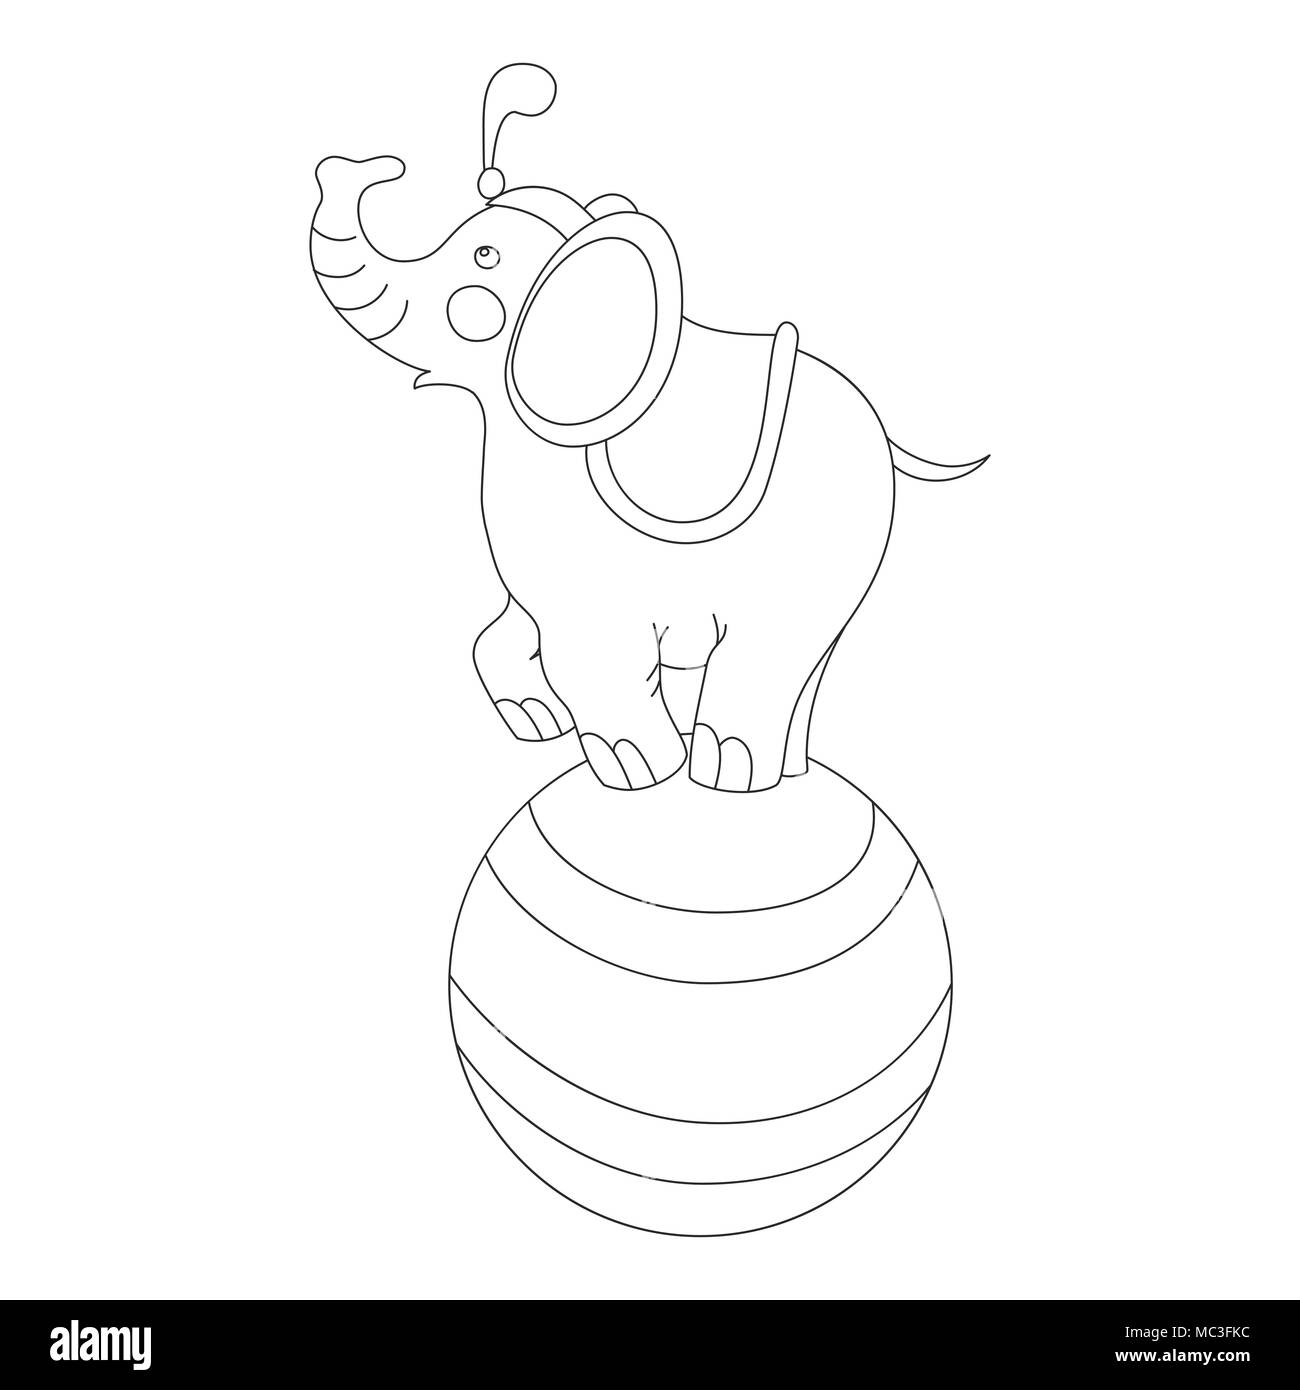 Cortar un elefante sobre la gran bola en un escenario de circo contorno vectorial doodle style Ilustración del Vector